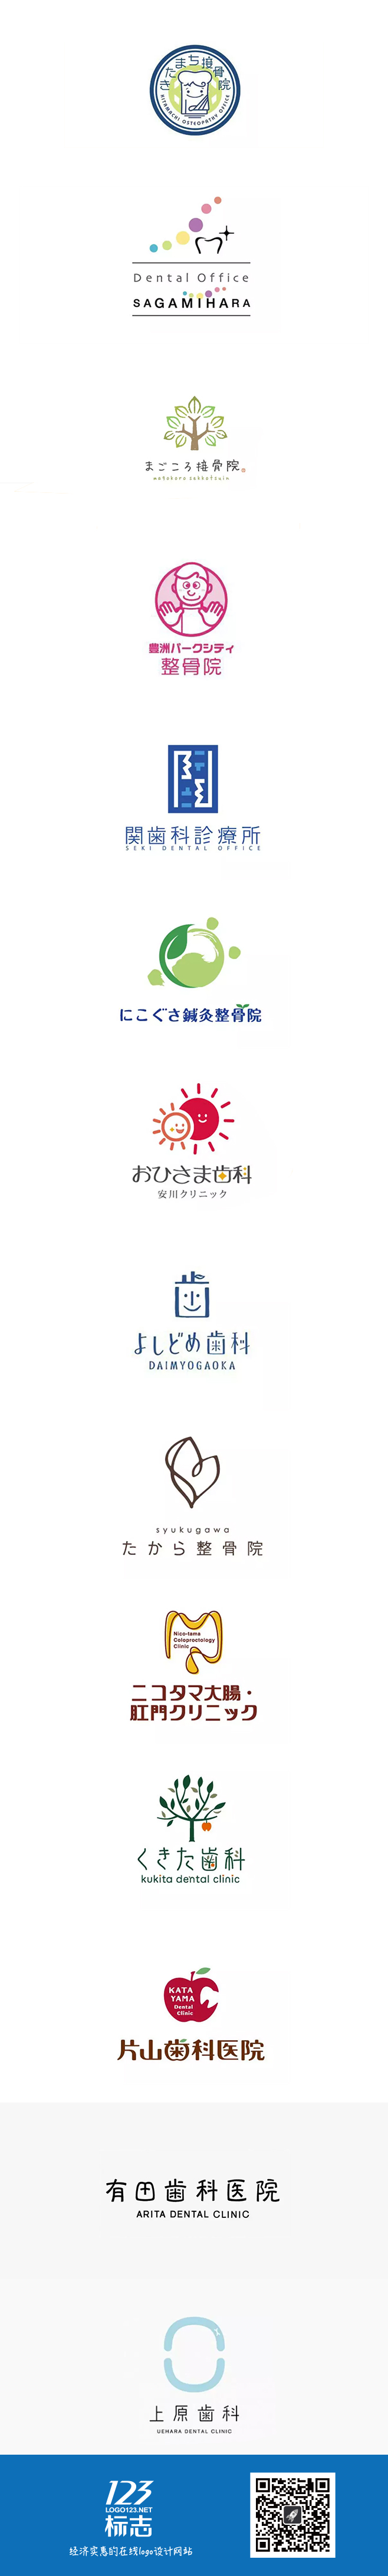 一组日系小清新风格医院元素logo设计集锦